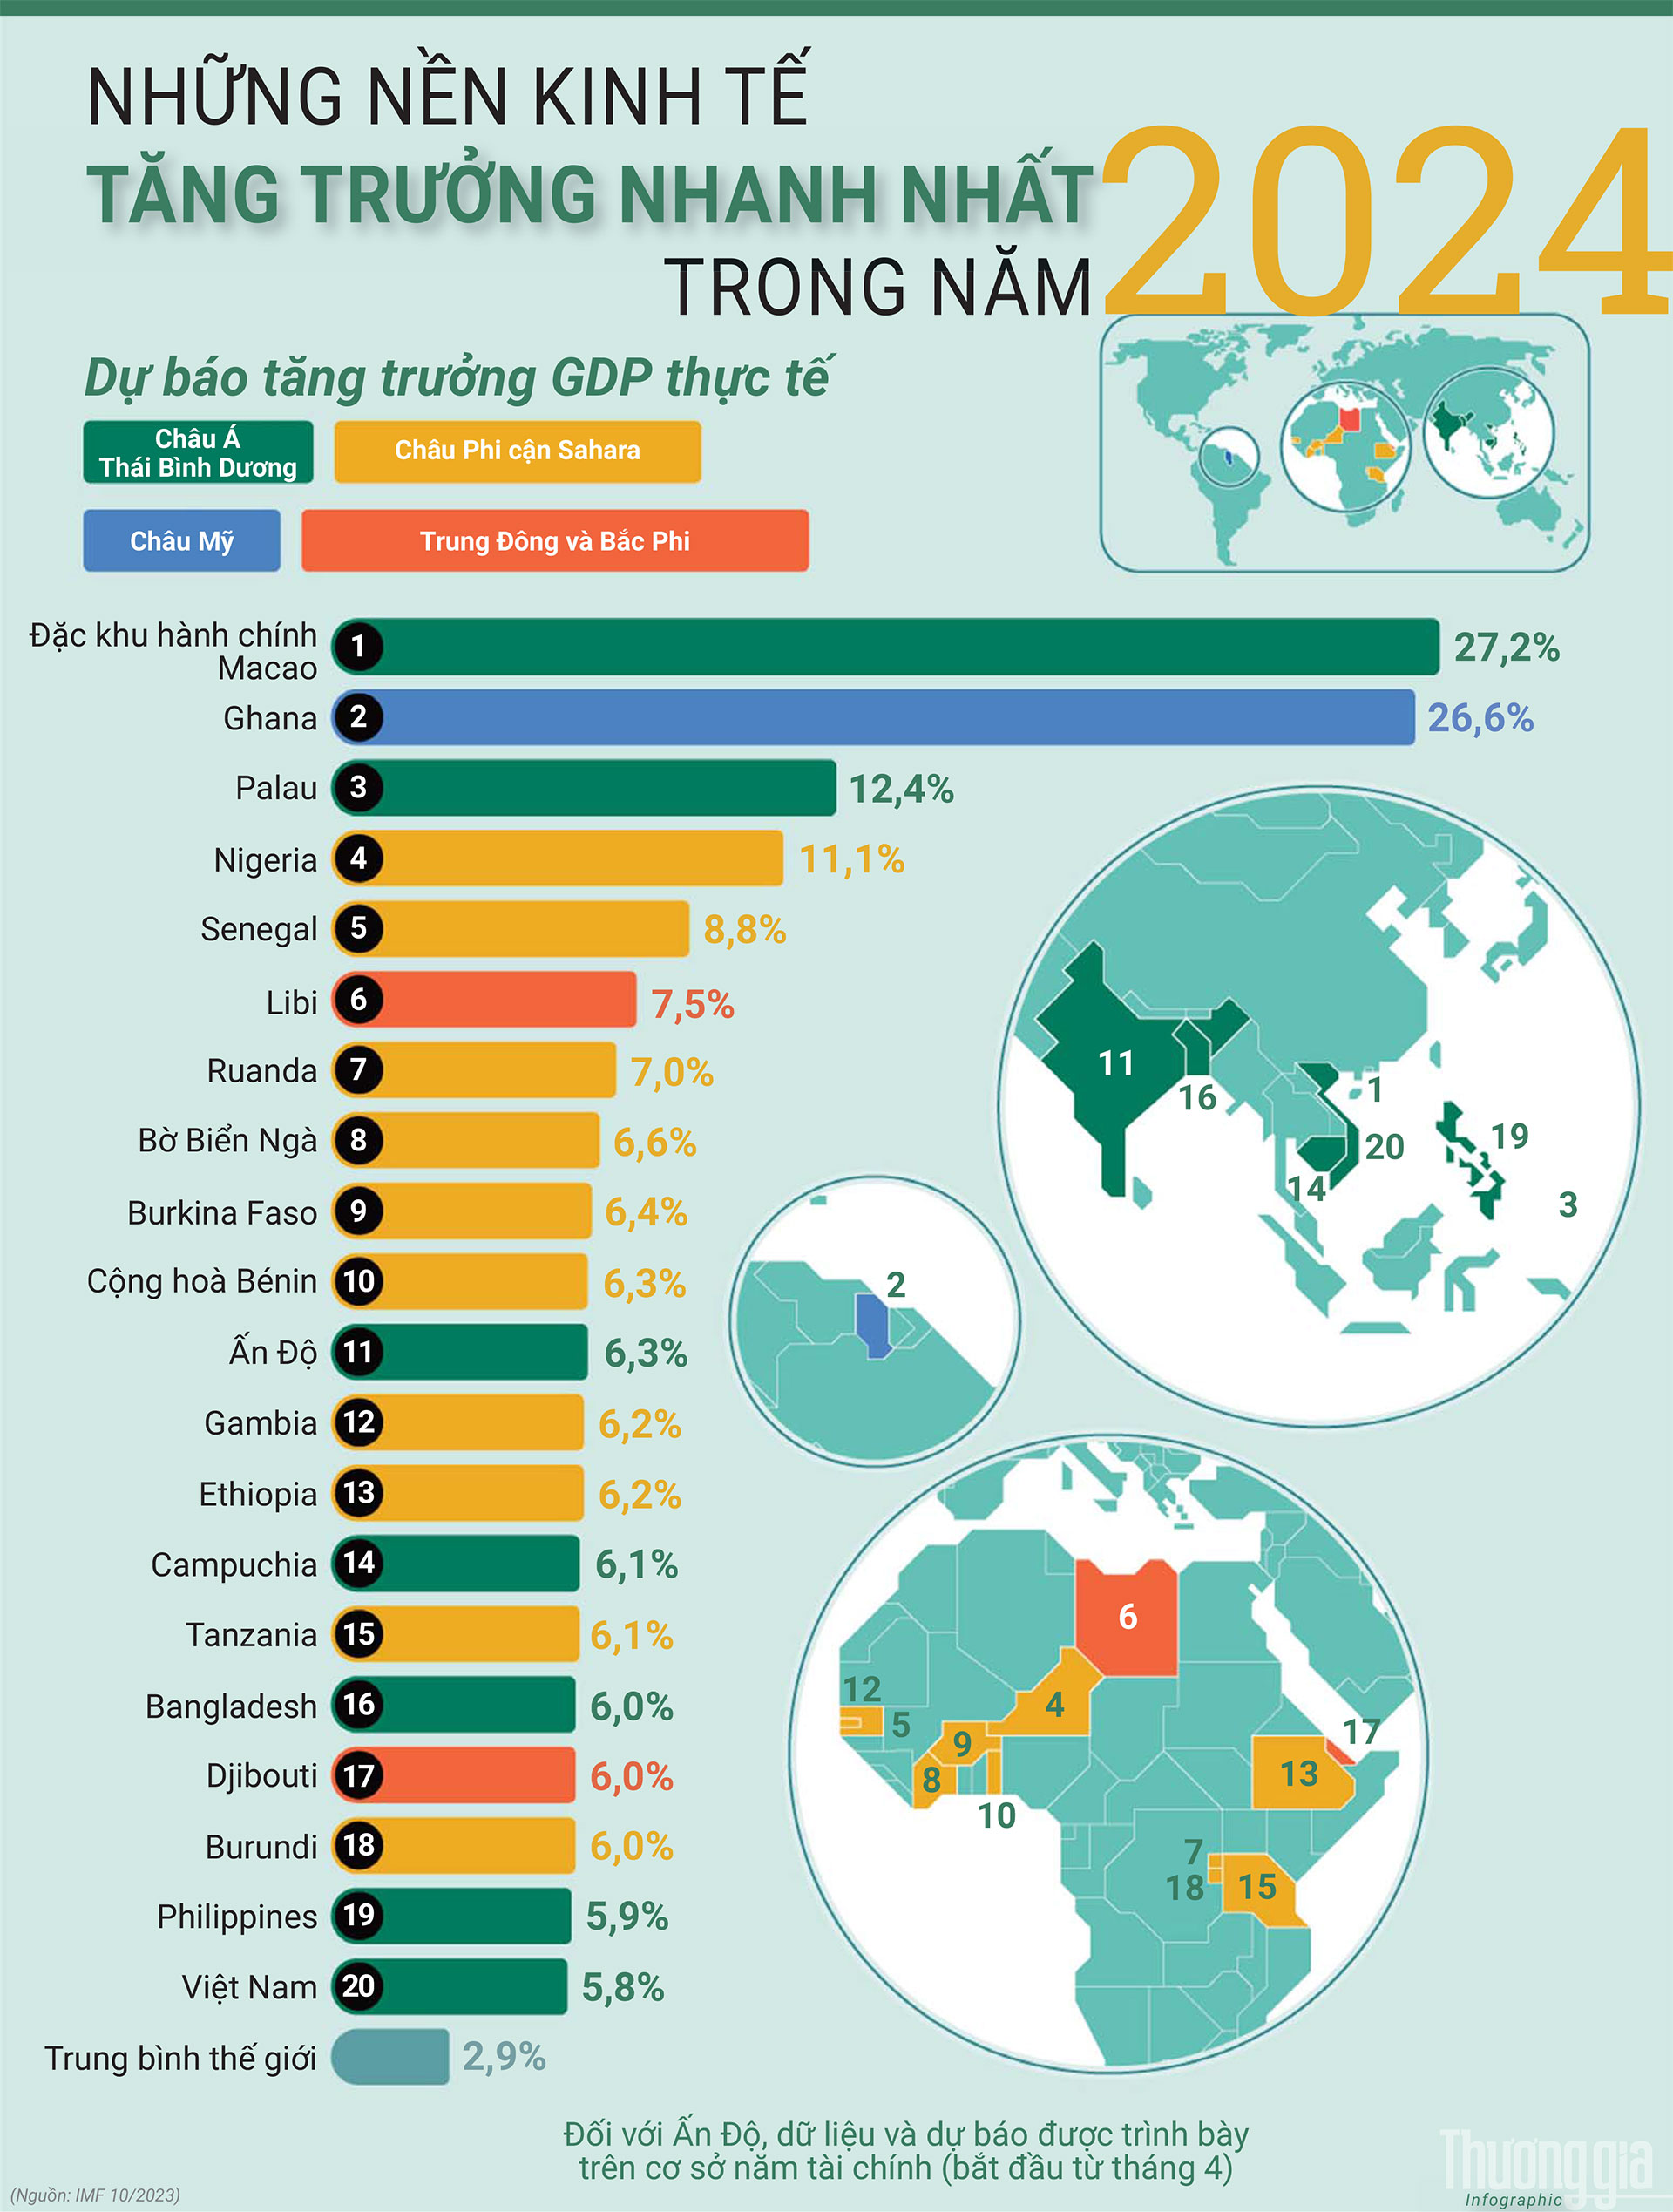 IMF: Việt Nam sẽ nằm trong nhóm 20 nền kinh tế tăng trưởng nhanh nhất năm 2024